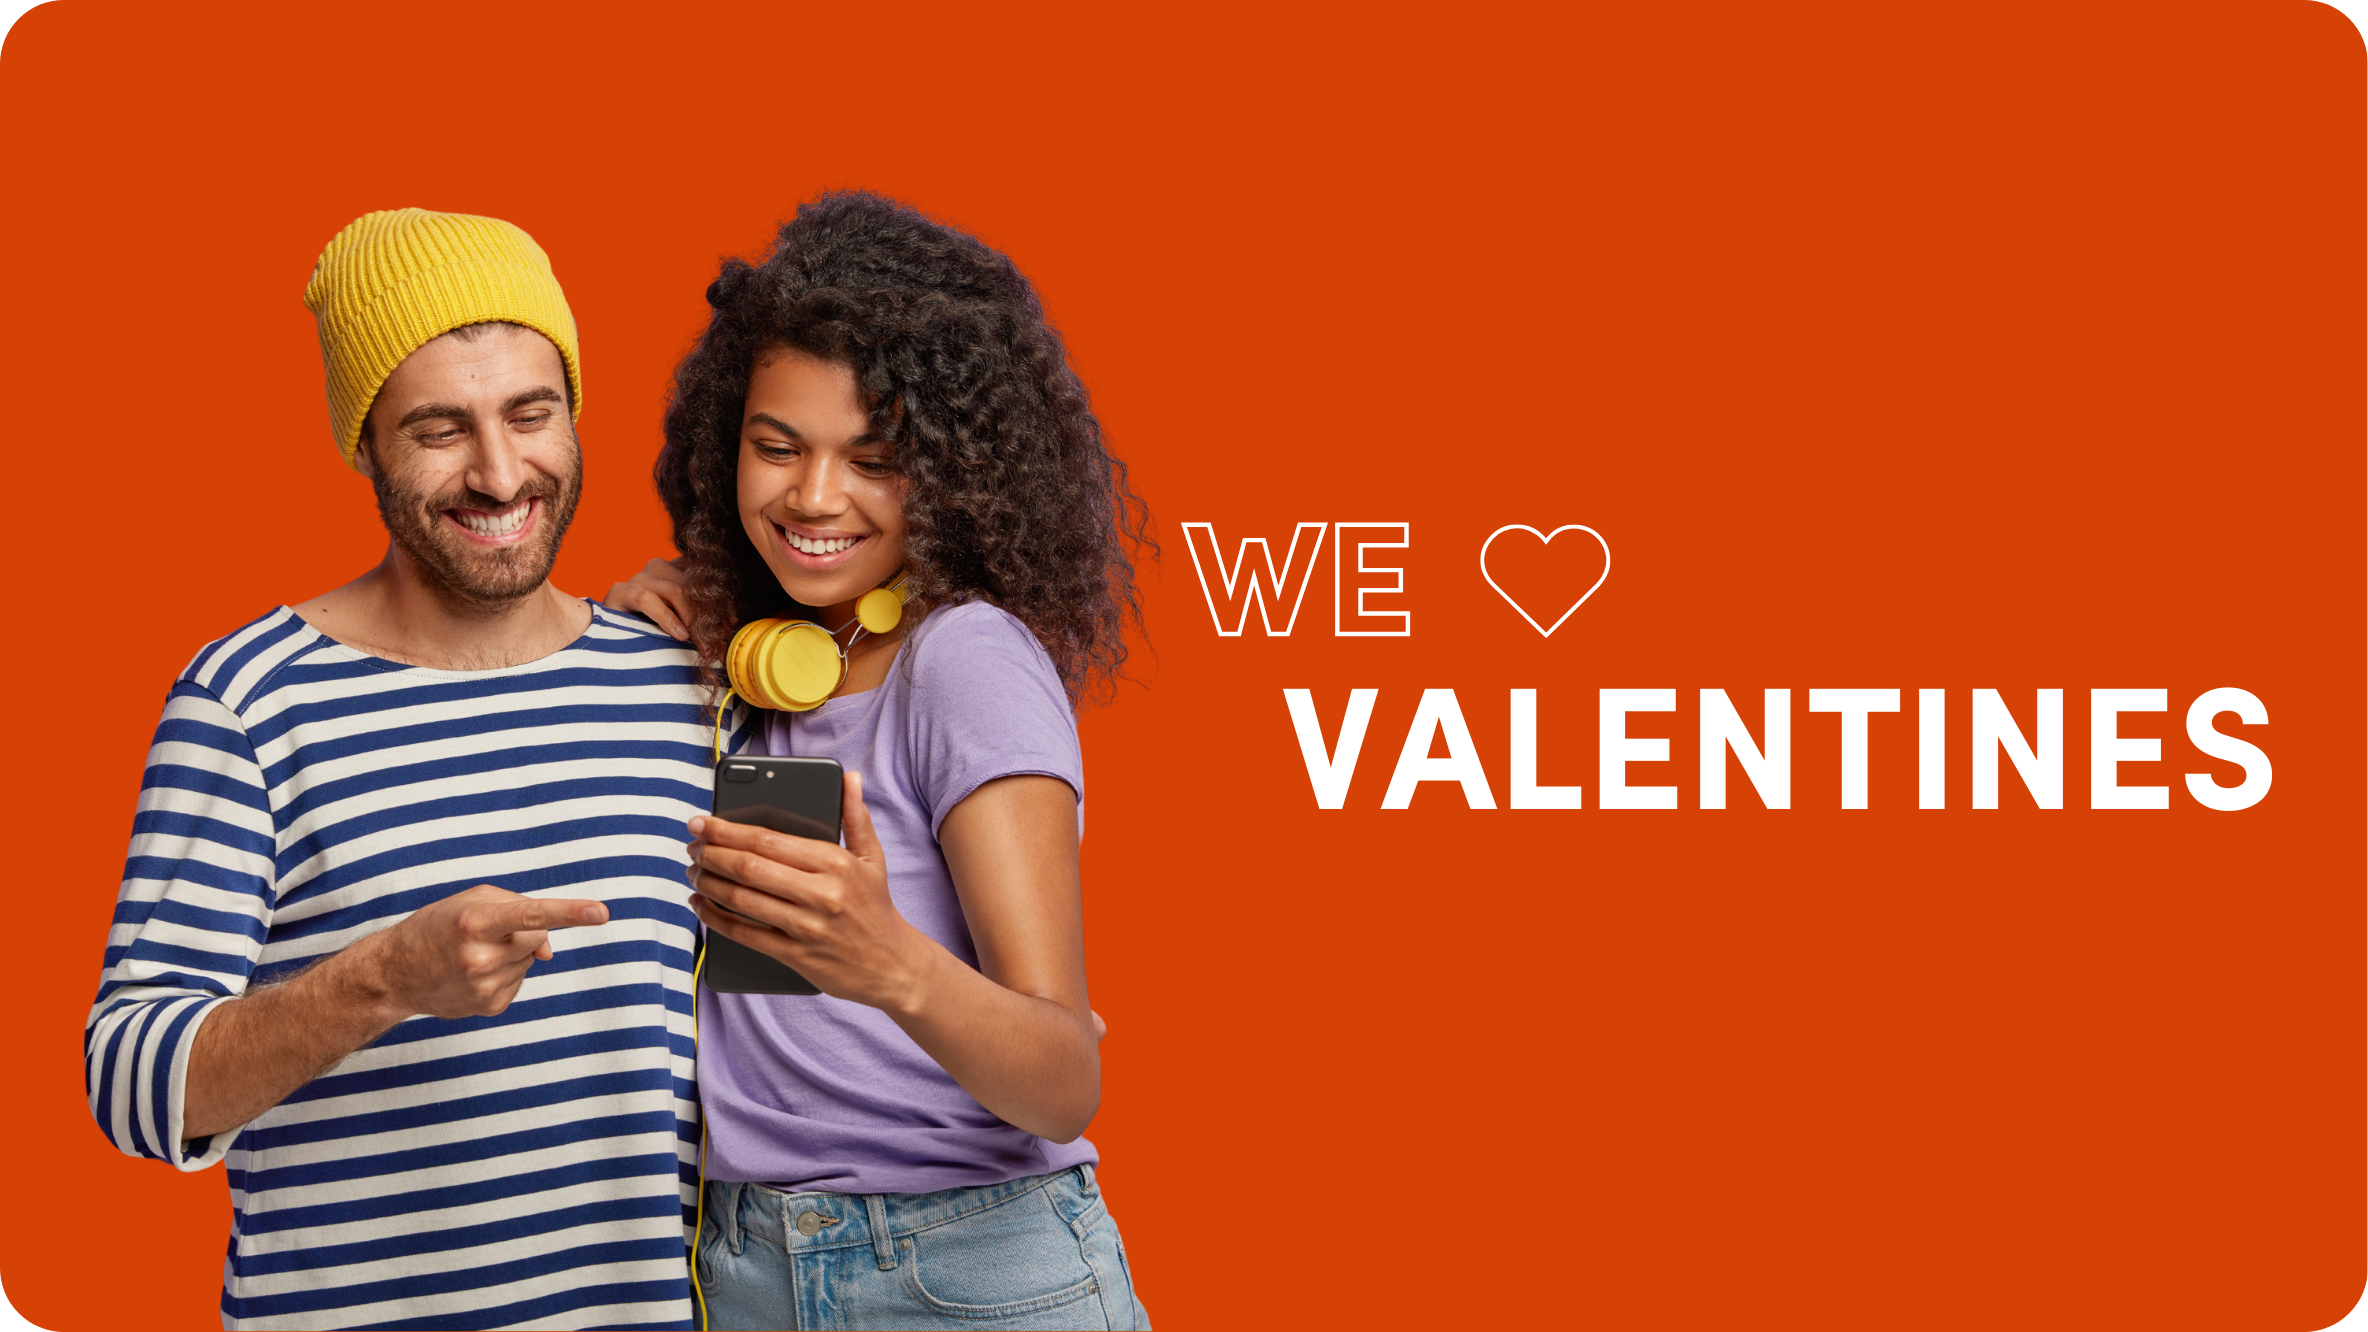 29 Best Valentine’s Day Marketing Campaigns